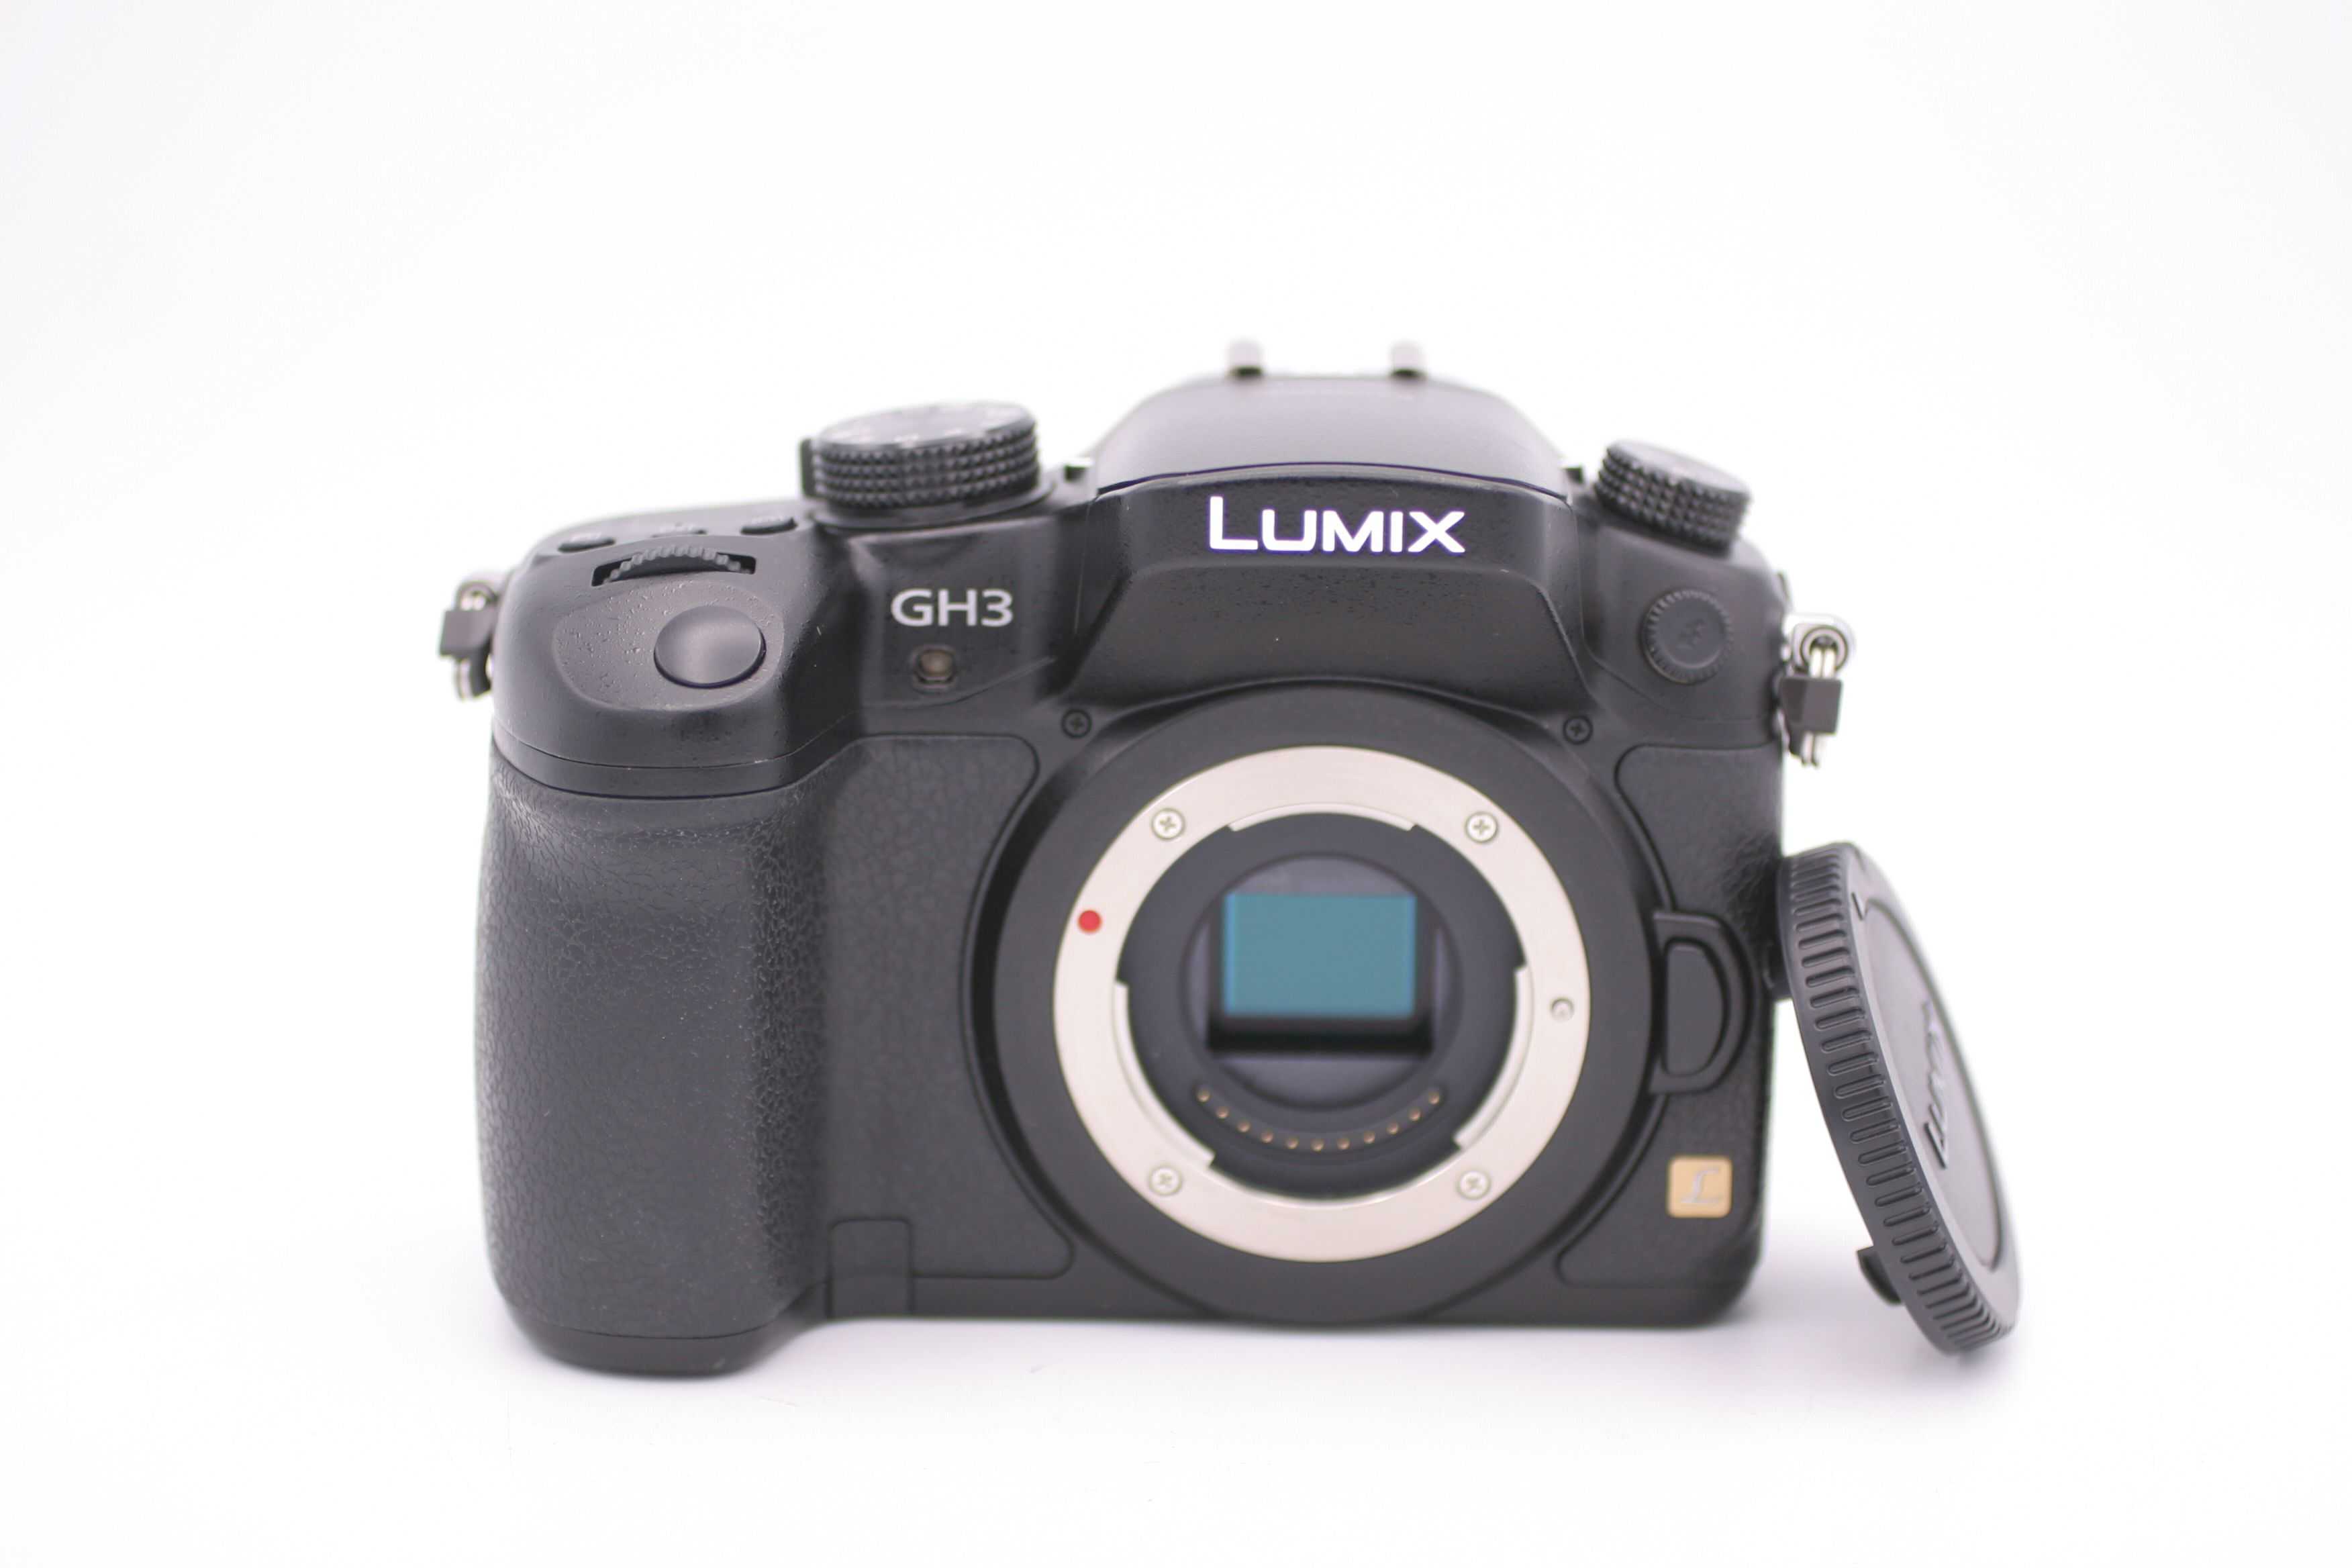 Panasonic lumix dmc-gh3 kit купить по акционной цене , отзывы и обзоры.